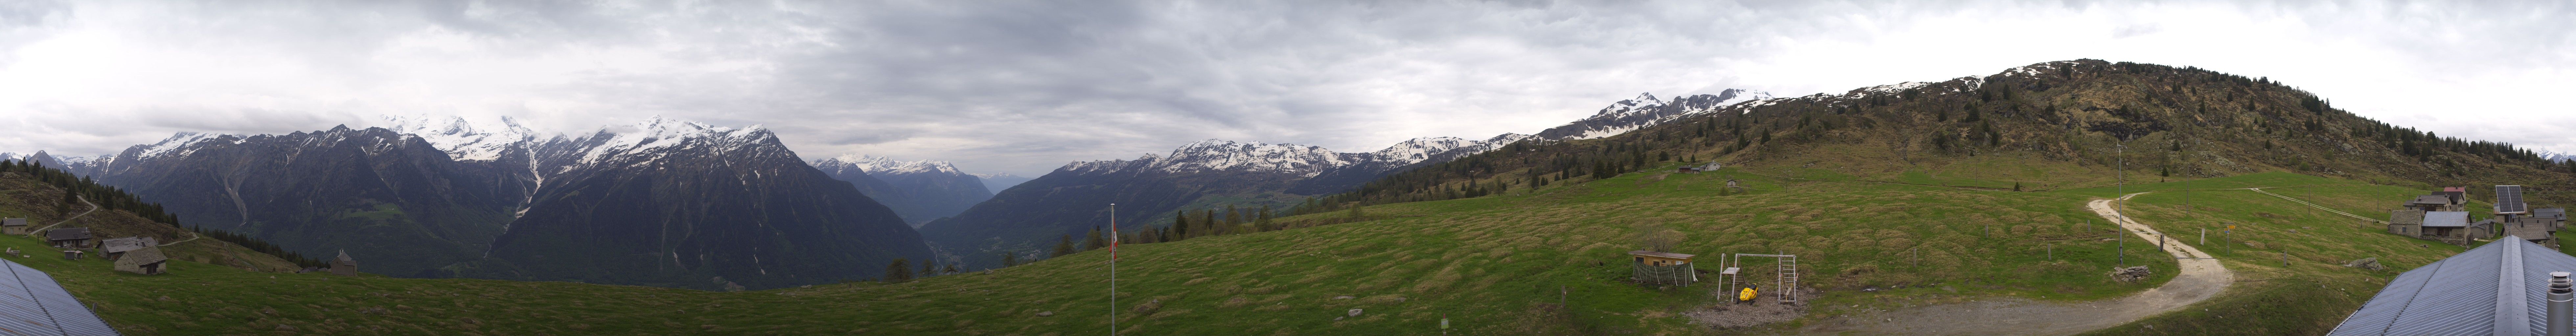 Blenio: Capanna Gorda - Punta di Larescia - Alpe Gorda - Val Blenio - Punta di Larescia - Cima del Simano - Sosto - Capanna Adula CAS - Rheinwaldhorn - Greina